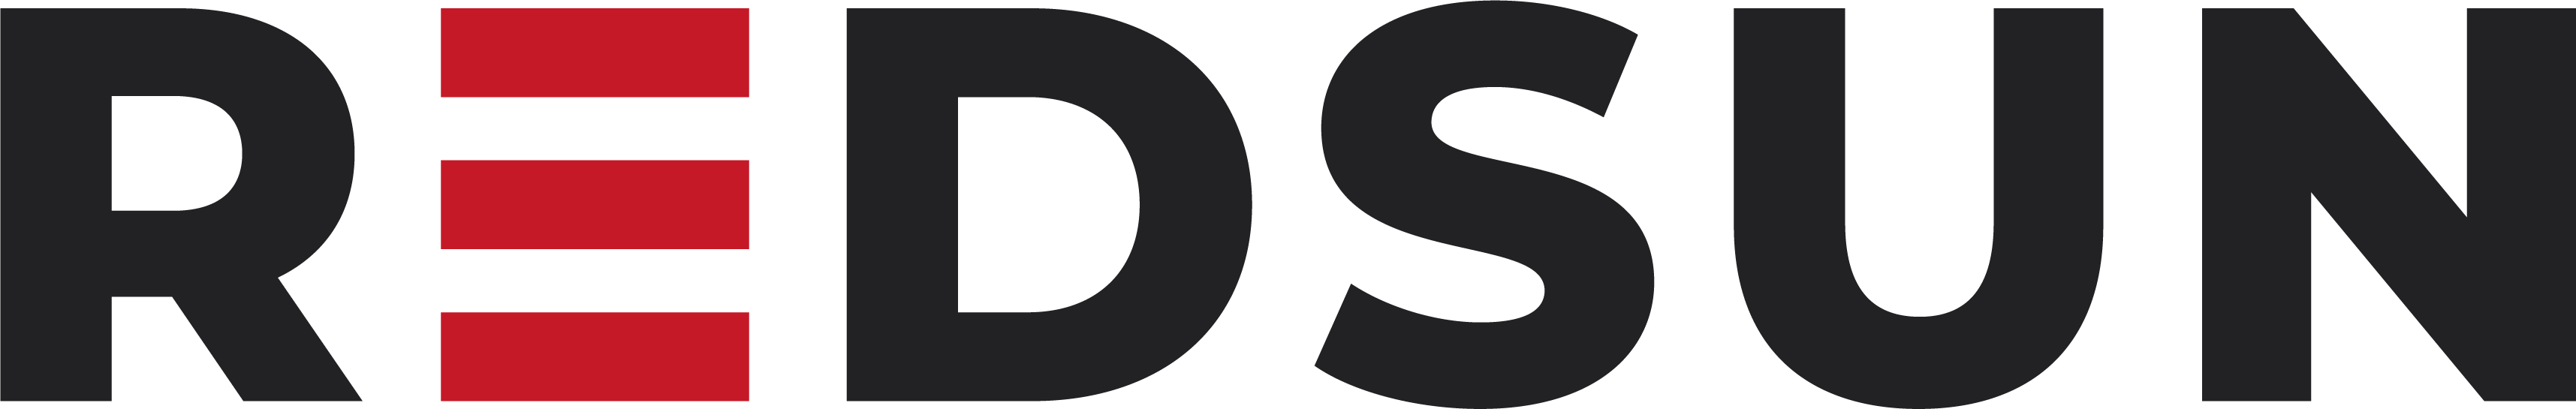 REDSUN Group logo